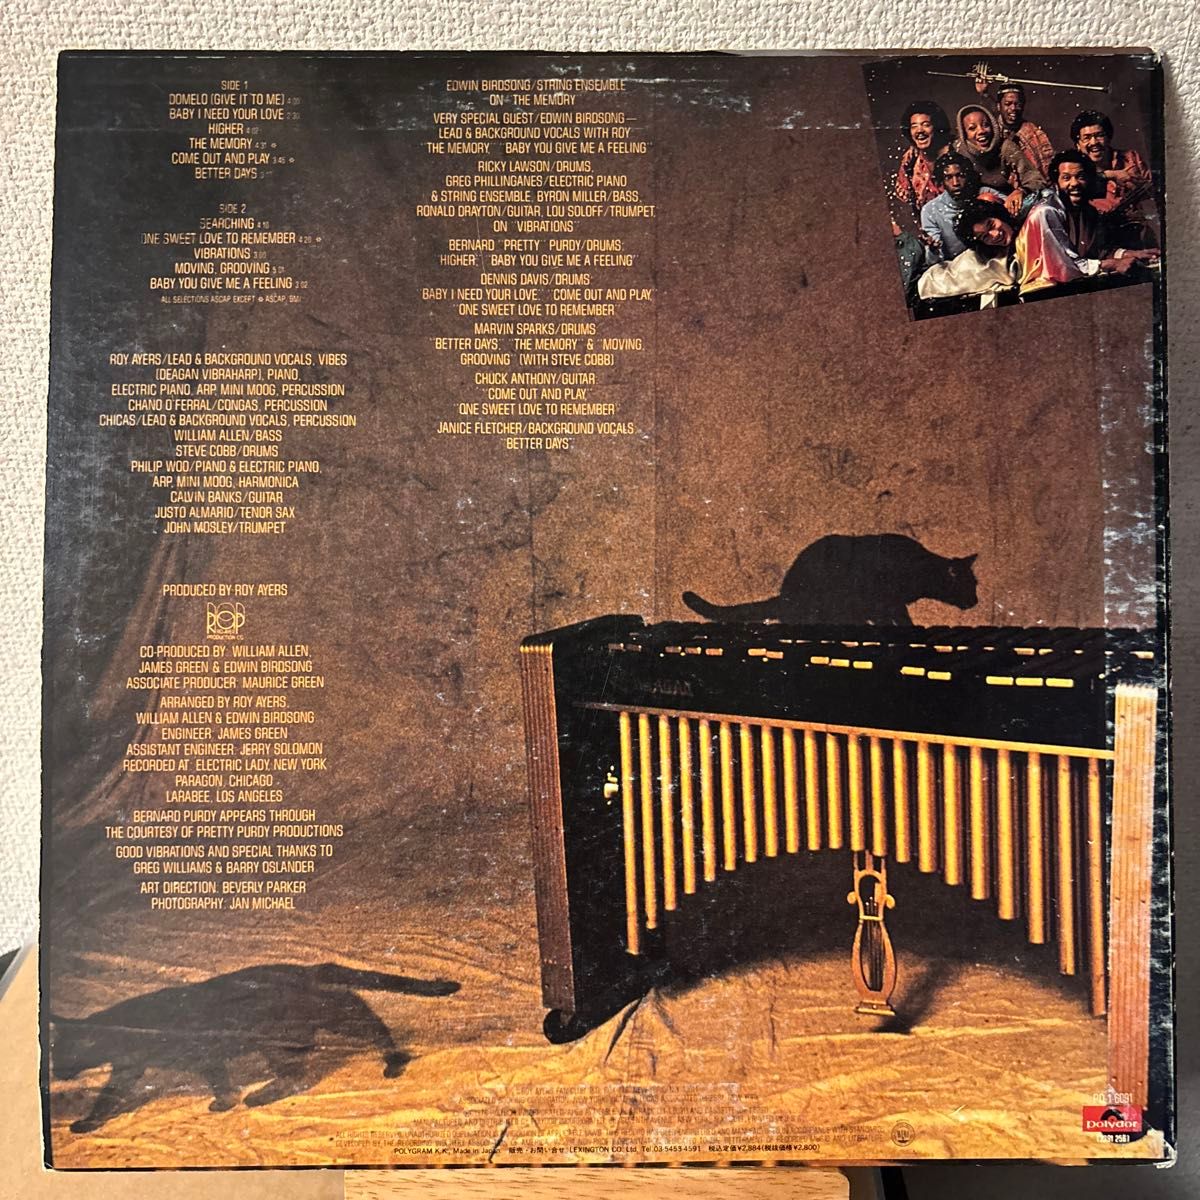 Roy Ayers Vibrations レコード LP ロイ・エアーズ ヴァイブレーションズ ヴァイブレイションズ ユビキティ